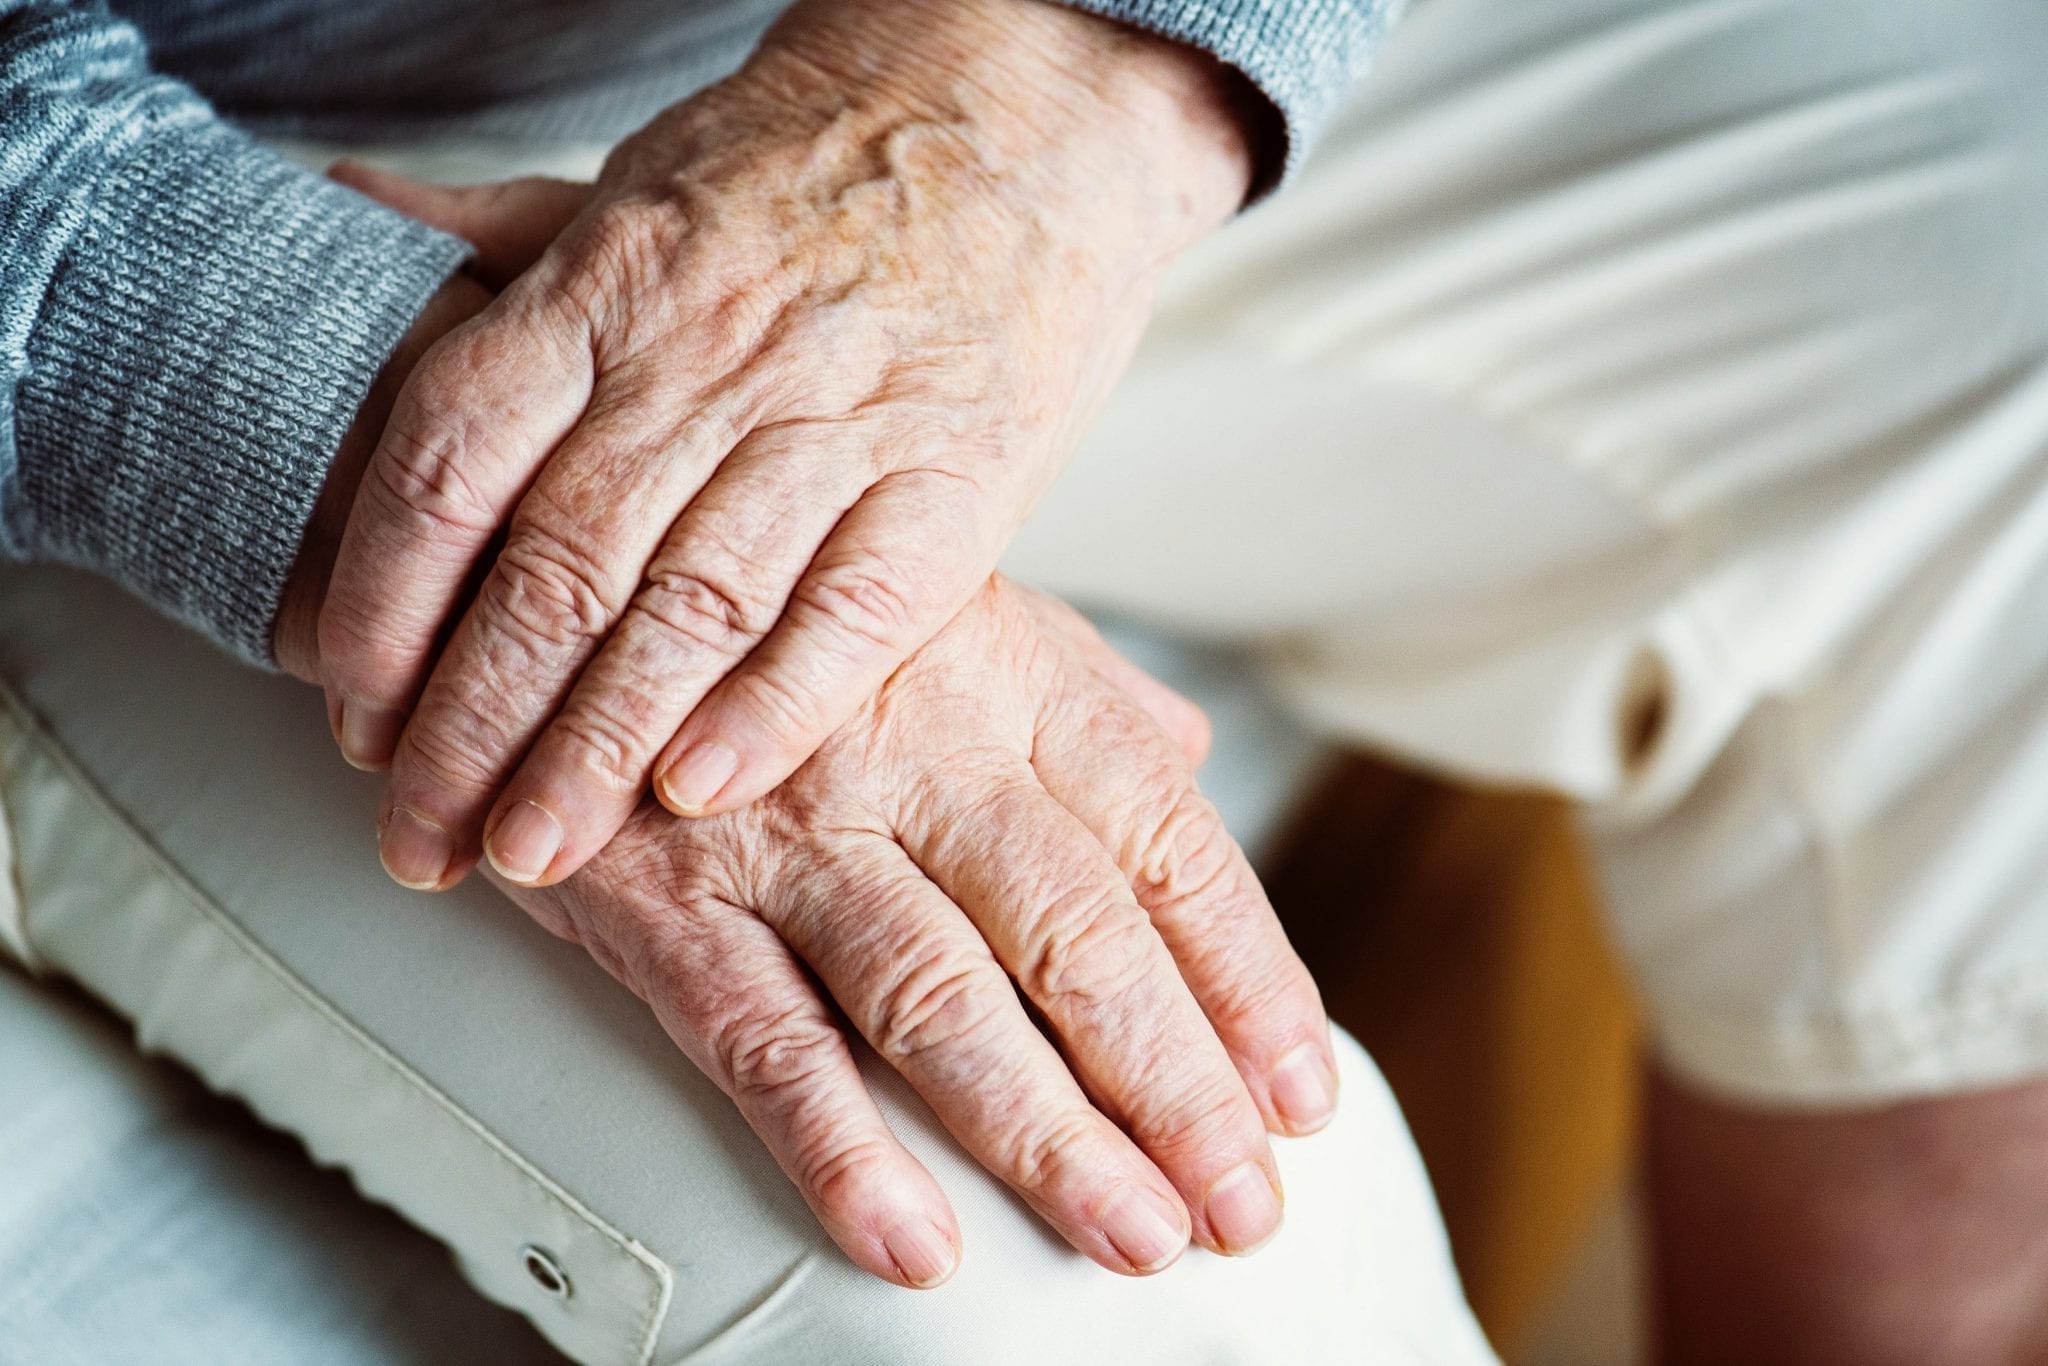 Nursing Home Disregards Its Residents' Lifesaving Medical Wishes